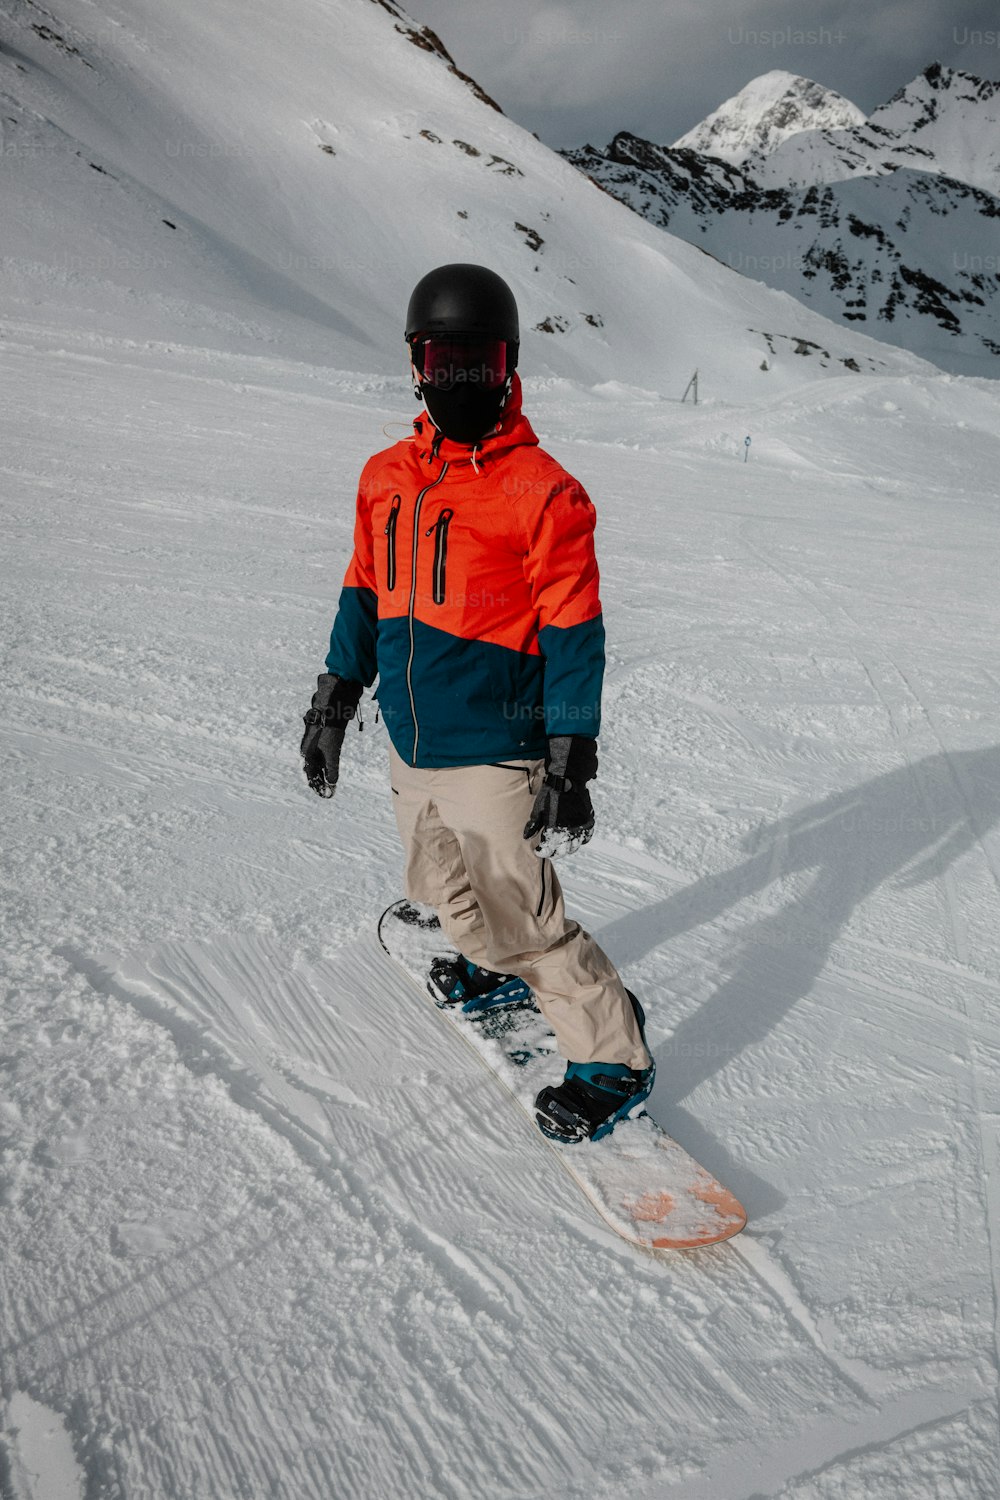 Un hombre montando una tabla de snowboard por una pendiente cubierta de nieve